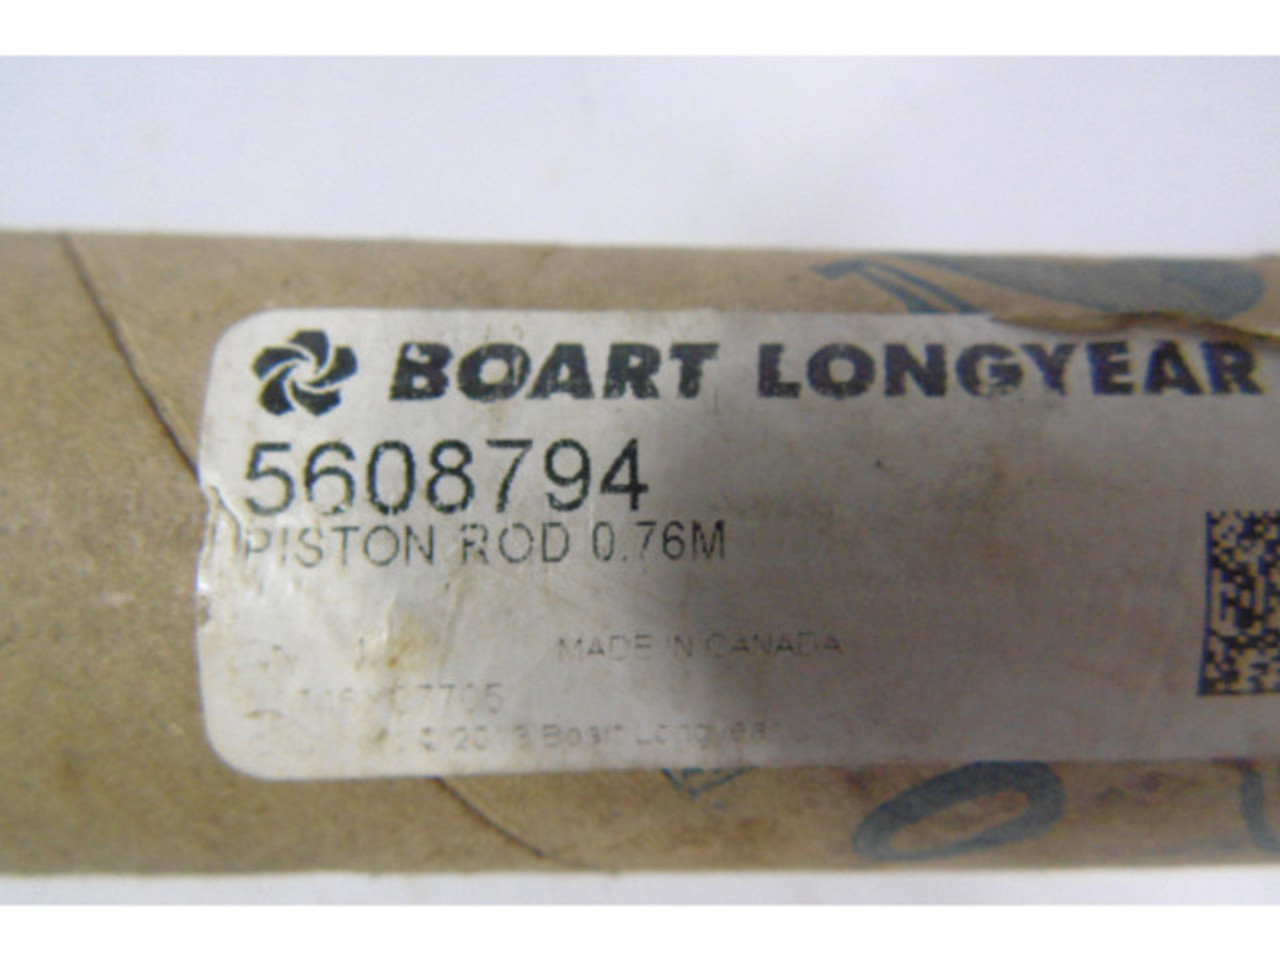 Boart Longyear 5608794 Piston Rod 0.76M ! NEW !